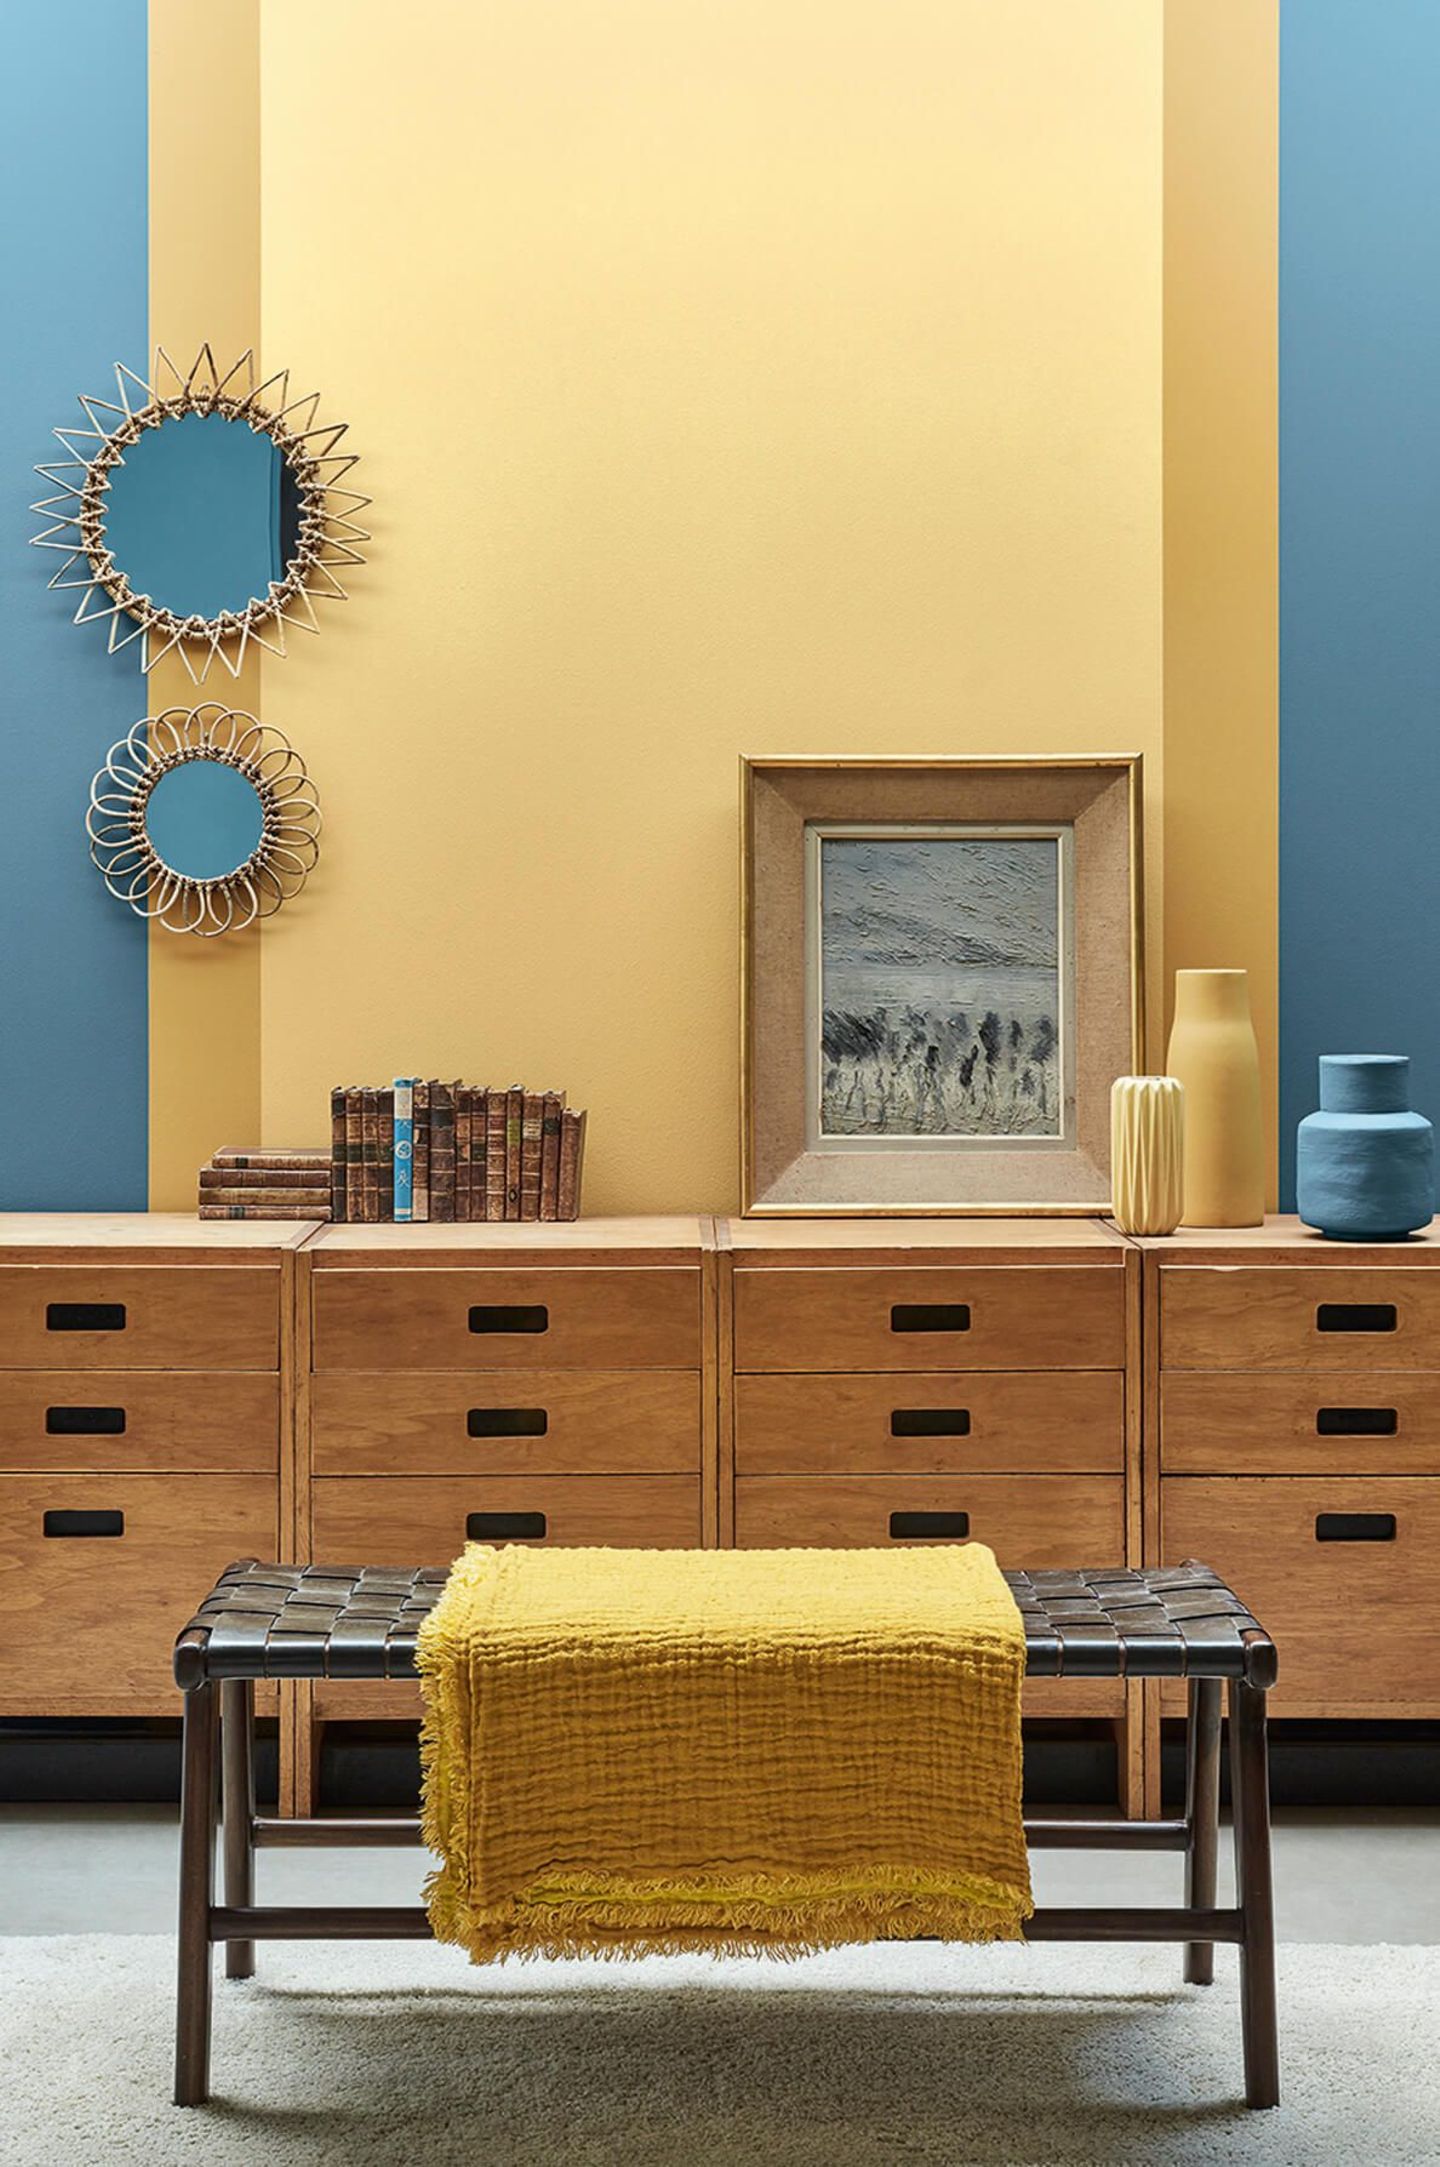 Gelbes Rechteck mit senfgelben Streifen an einer Wand in Blau mit Holzmöbeln im Vordergrund